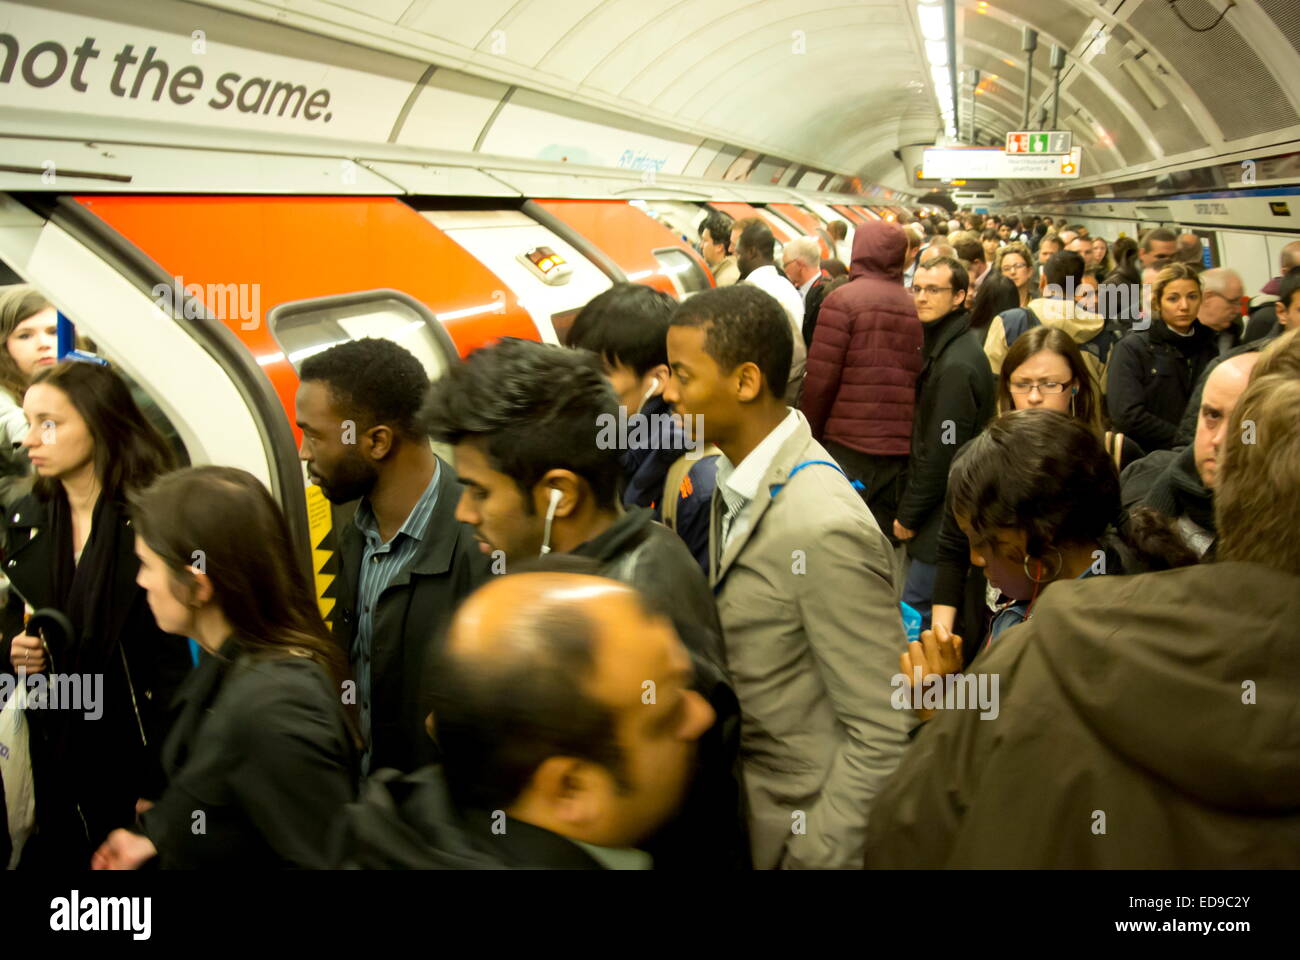 La foule des banlieusards bord d'un train du métro de Londres à Oxford Circus station sur la ligne Victoria, London, UK Banque D'Images